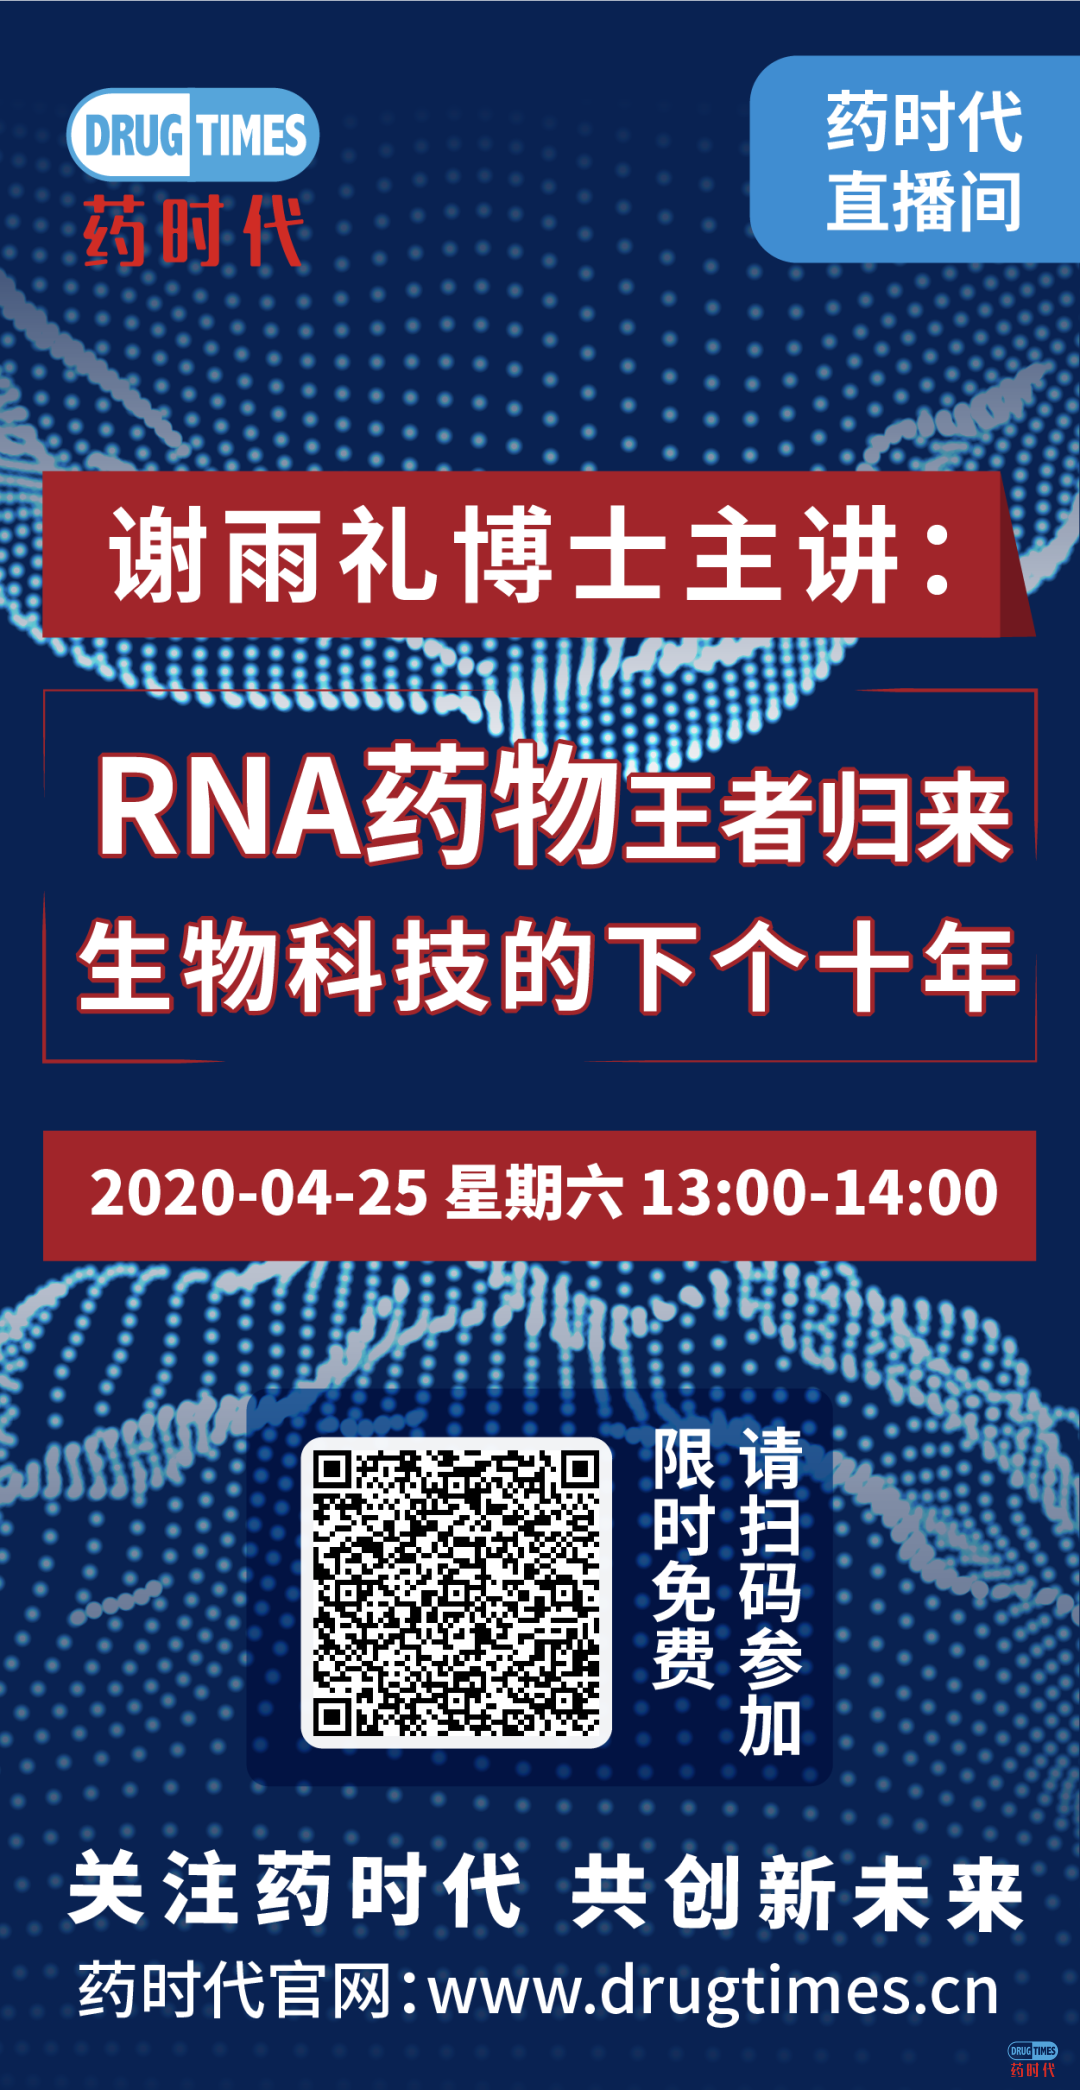 今天下午1点，谢雨礼博士主讲RNA药物王者归来——生物科技的下个十年！